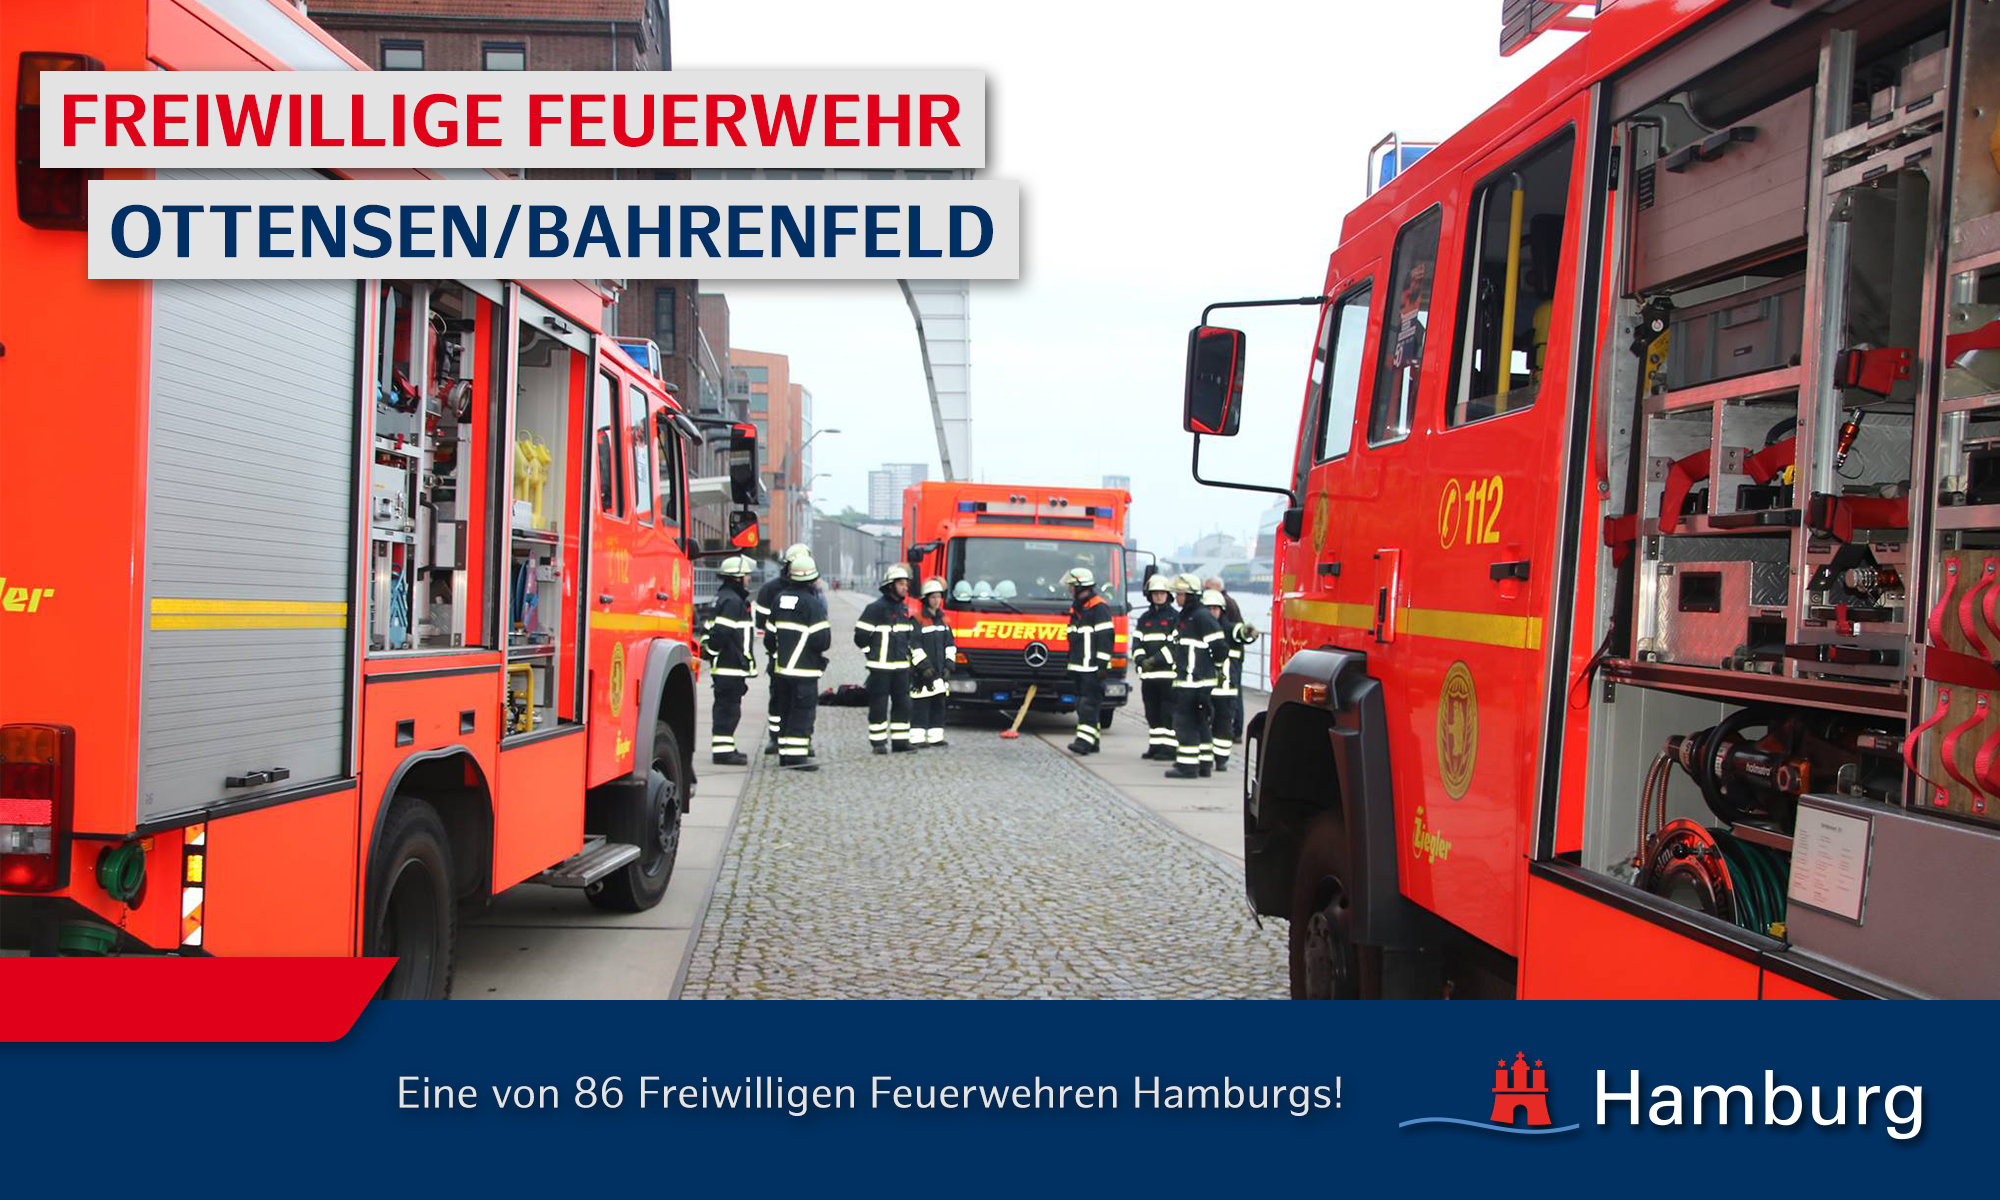 Freiwillige Feuerwehr Ottensen/Bahrenfeld